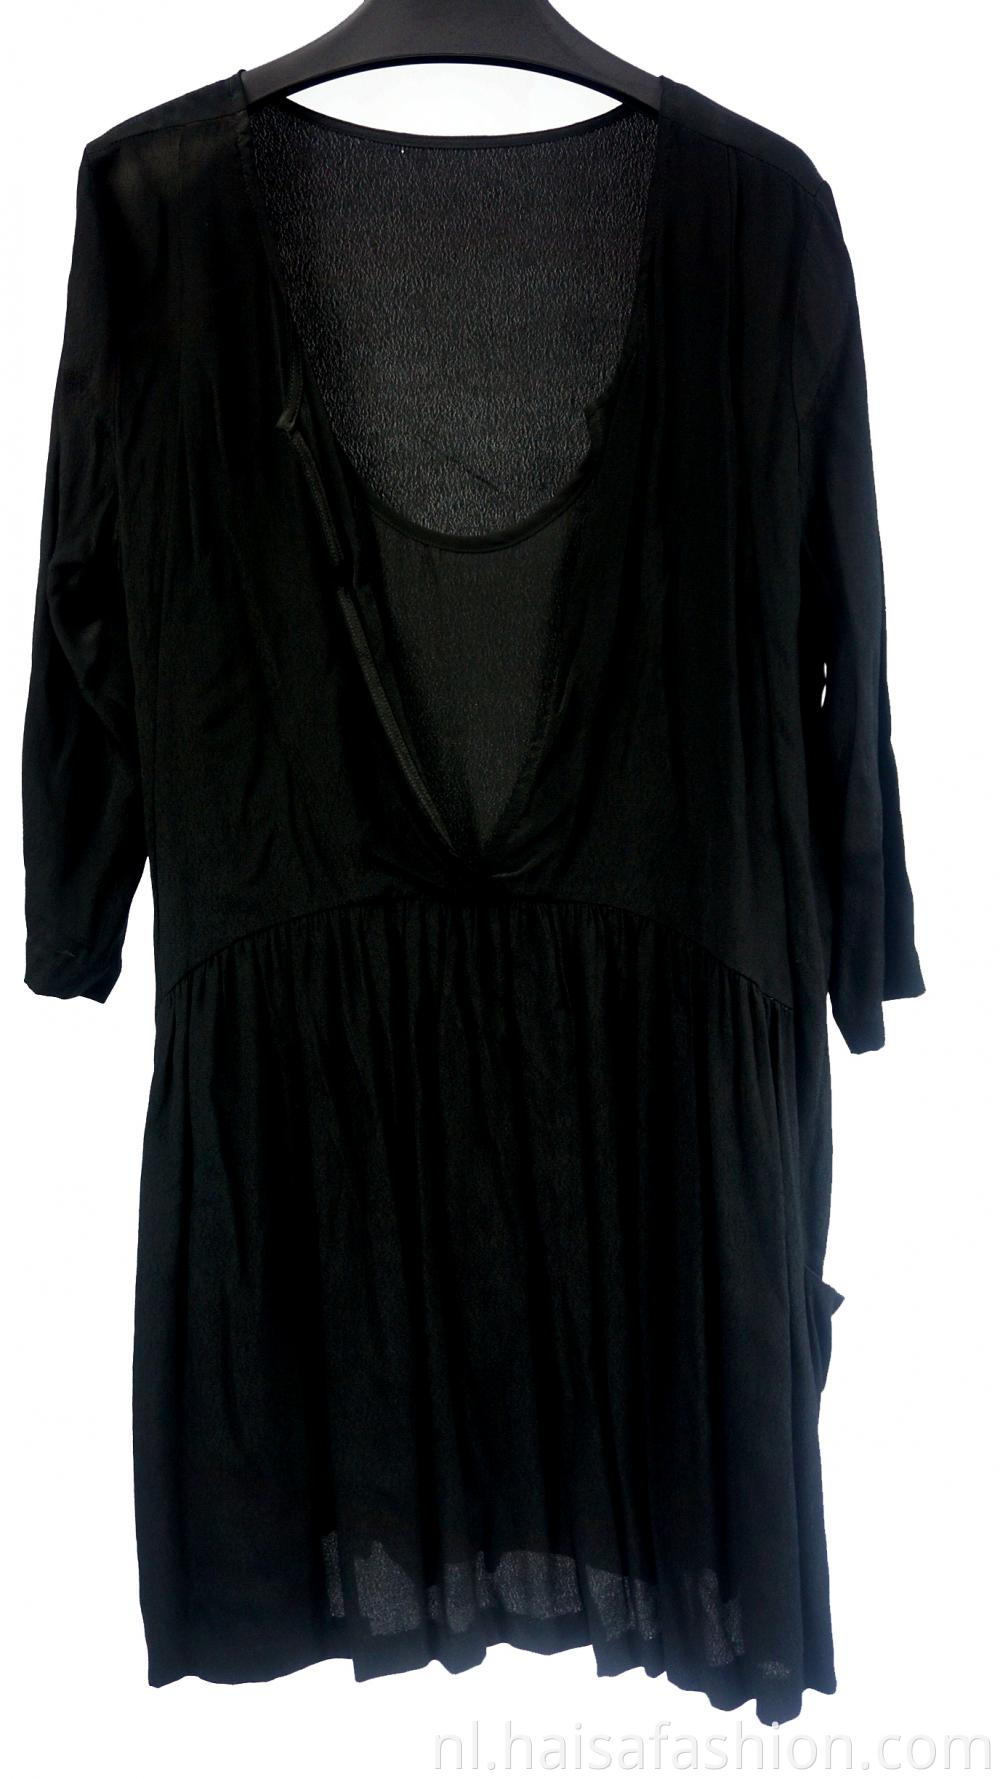 Women's Black V-Neck Long-Sleeved Dress